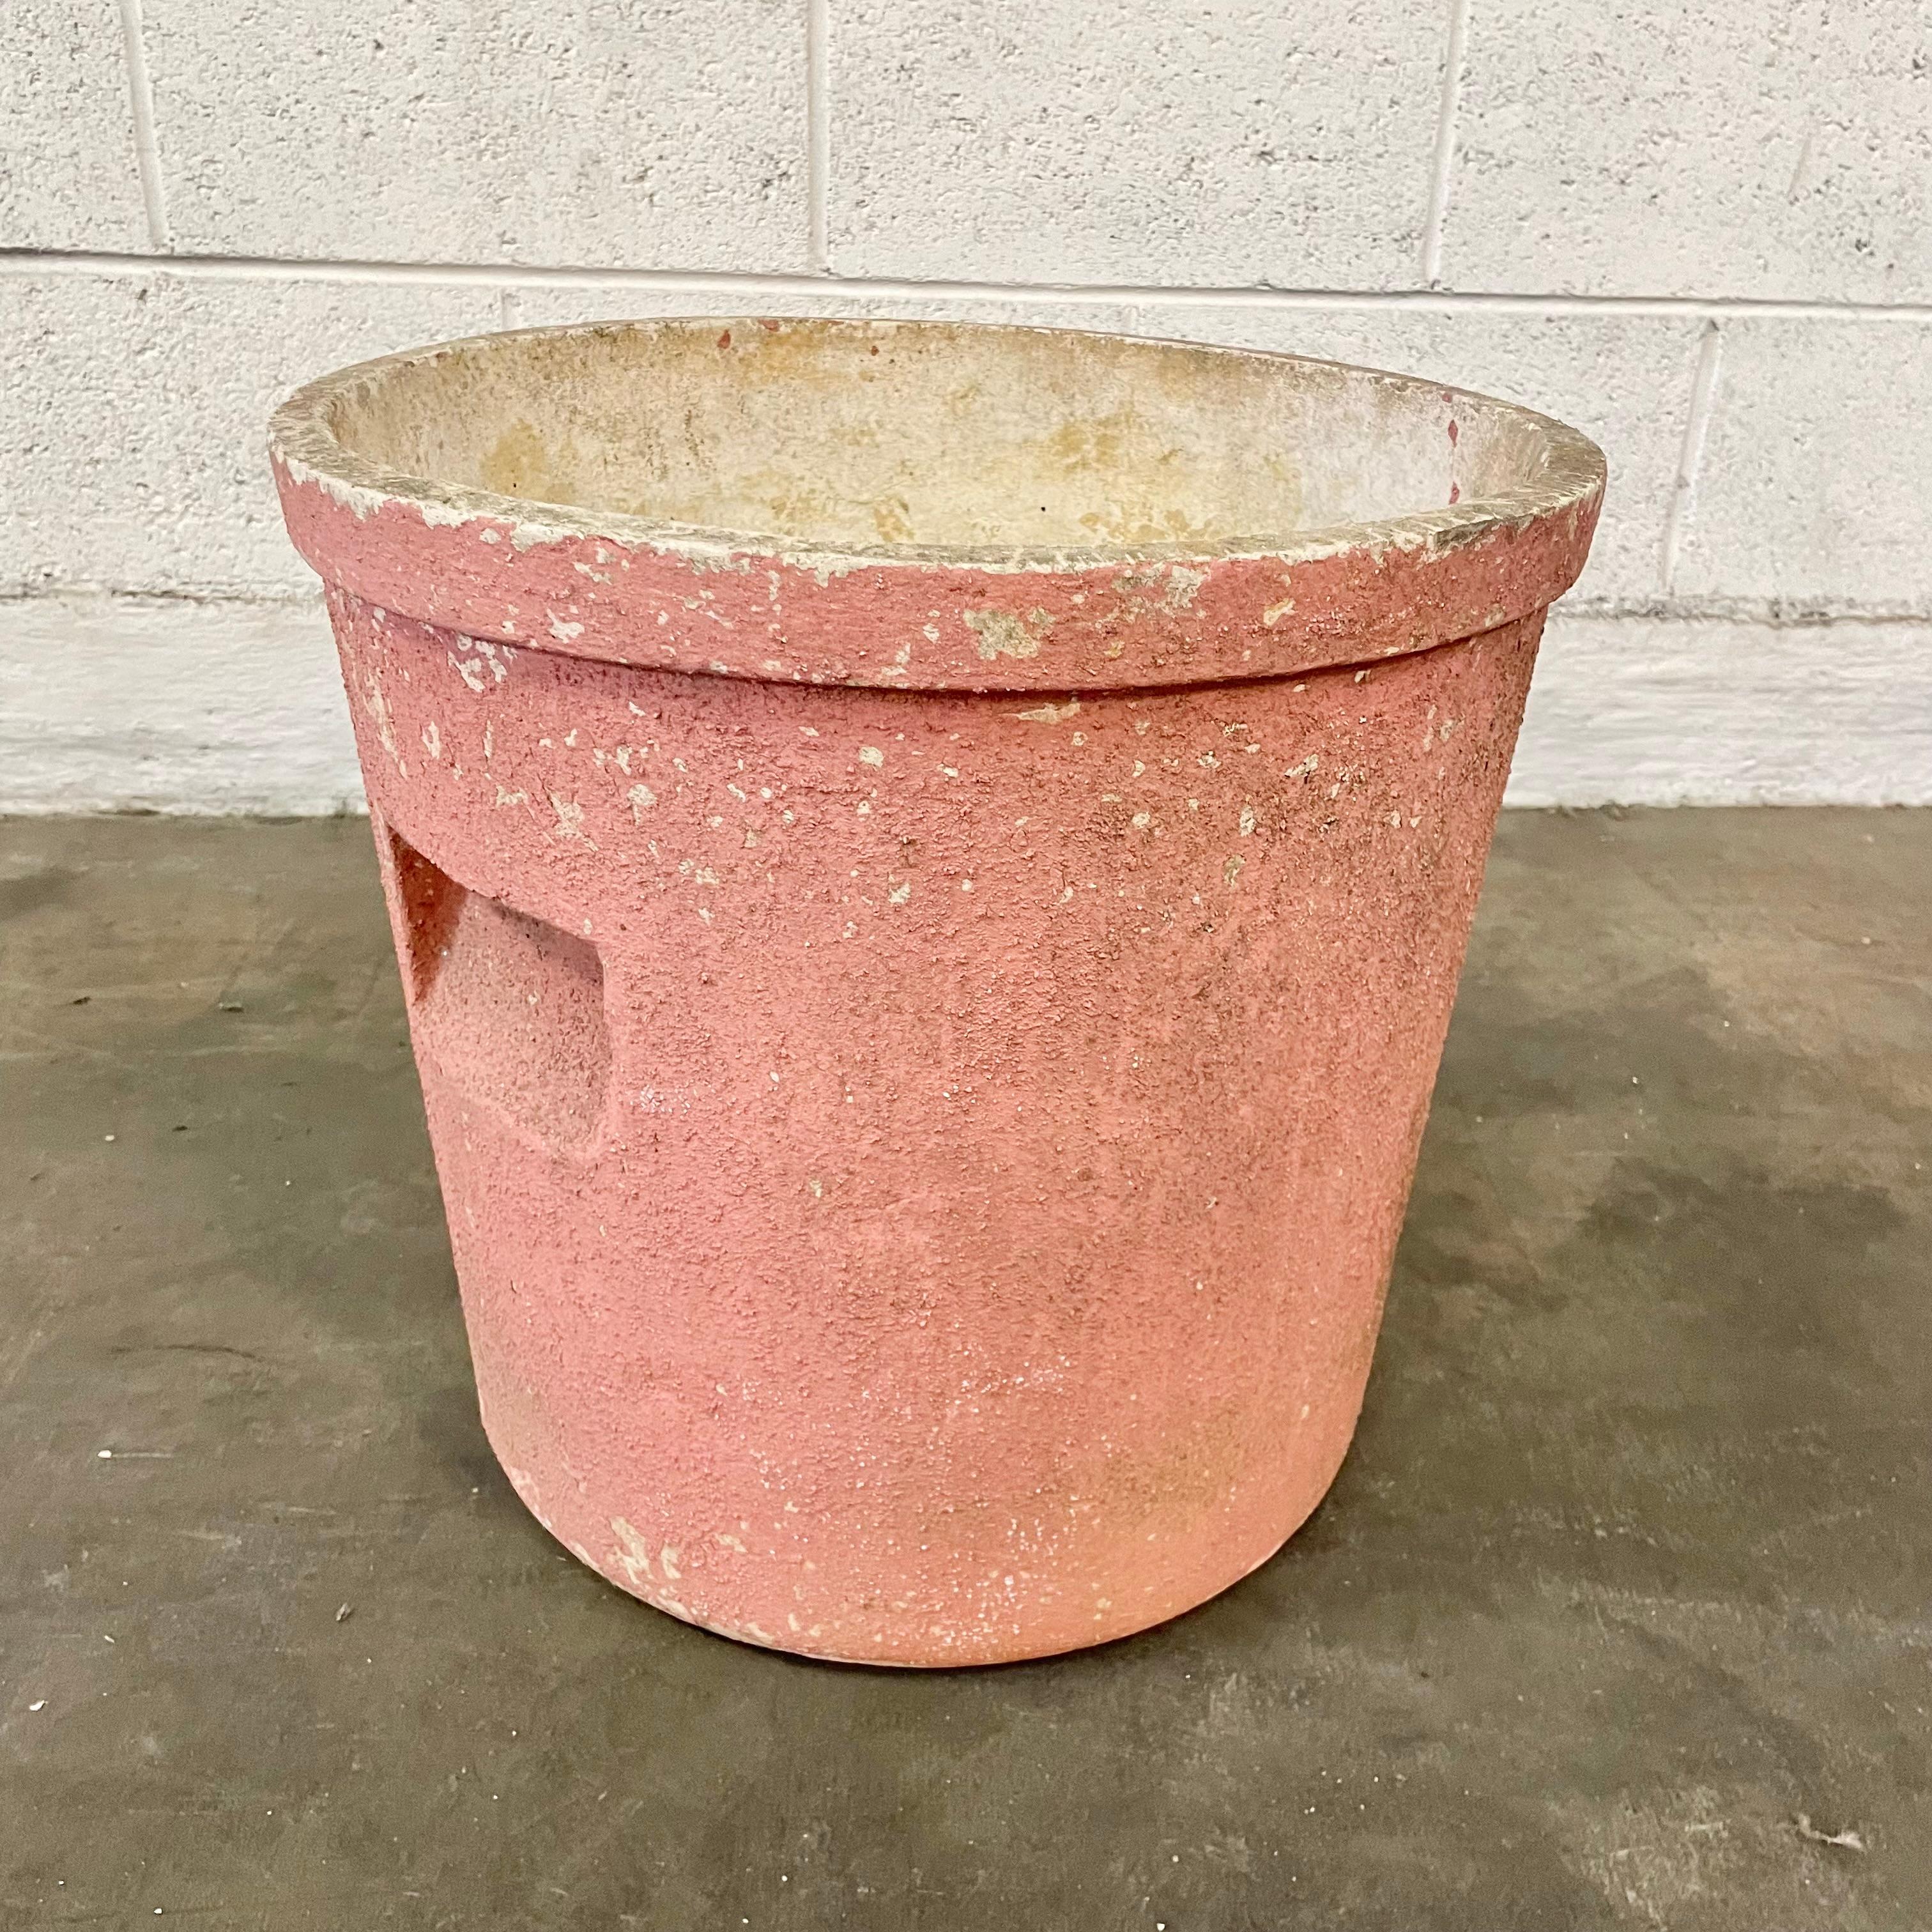 Magnifique pot de fleurs en béton rose par Willy Guhl. Fabriqué en Suisse dans les années 1960. Excellent état. Une couleur et une patine magnifiques et uniques. Forme classique de pot de fleurs avec poignées en retrait des deux côtés. Un seul